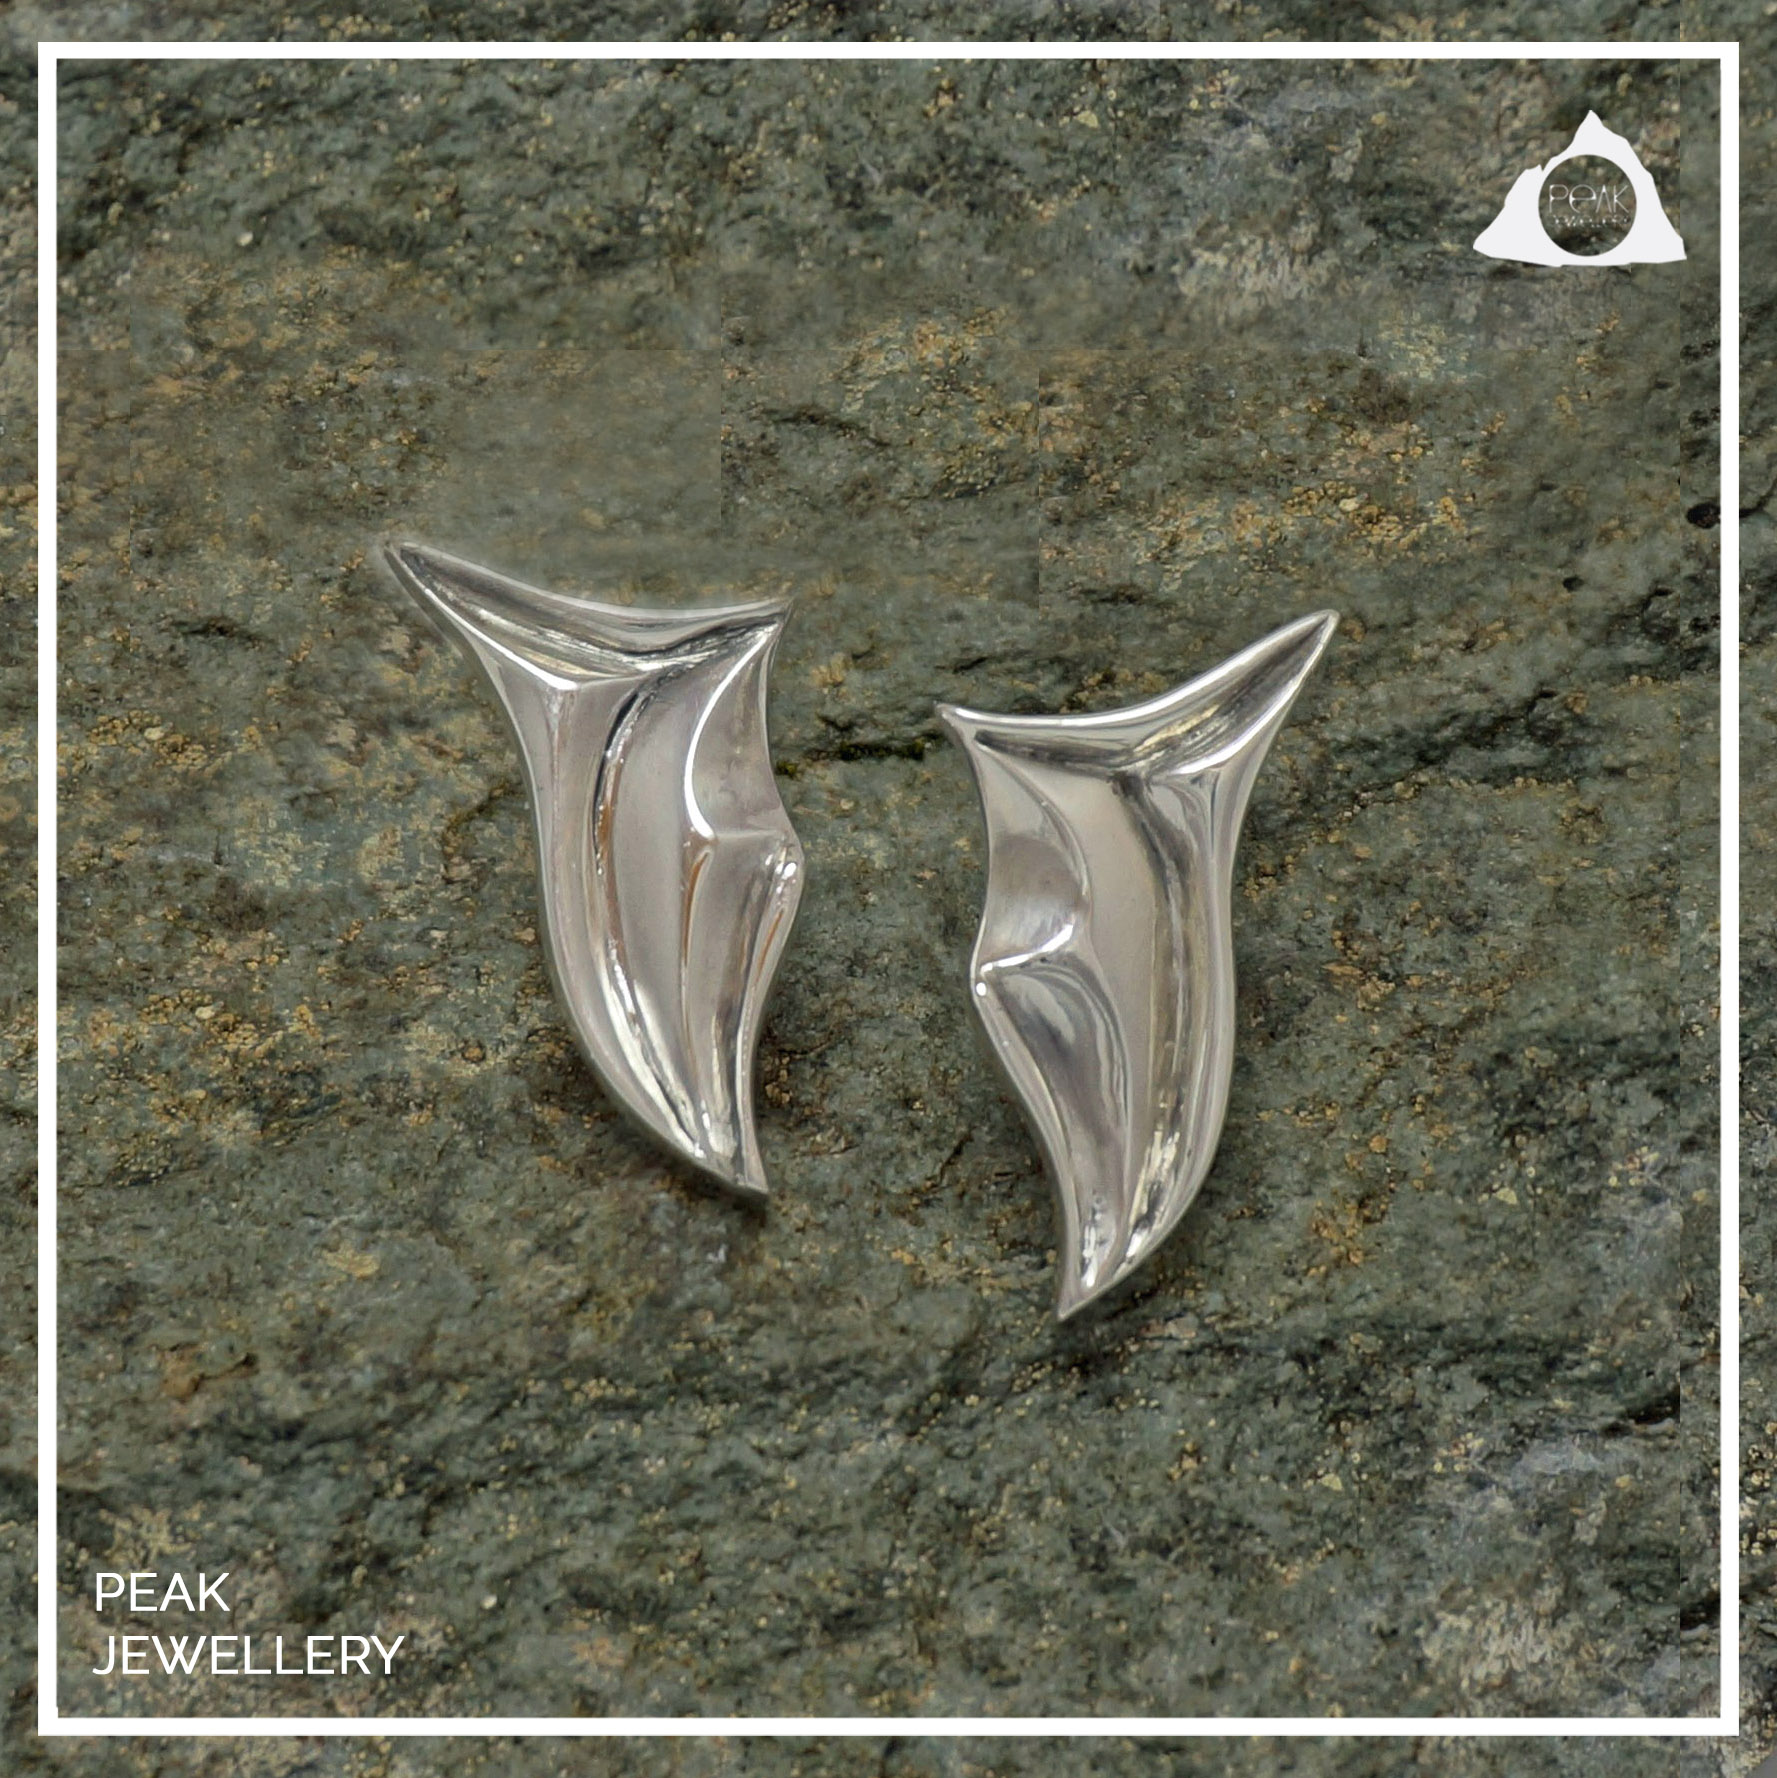 Glacier earrings, peak jewellery, chunky silver earrings, unusual earrings, sculptural jewellery